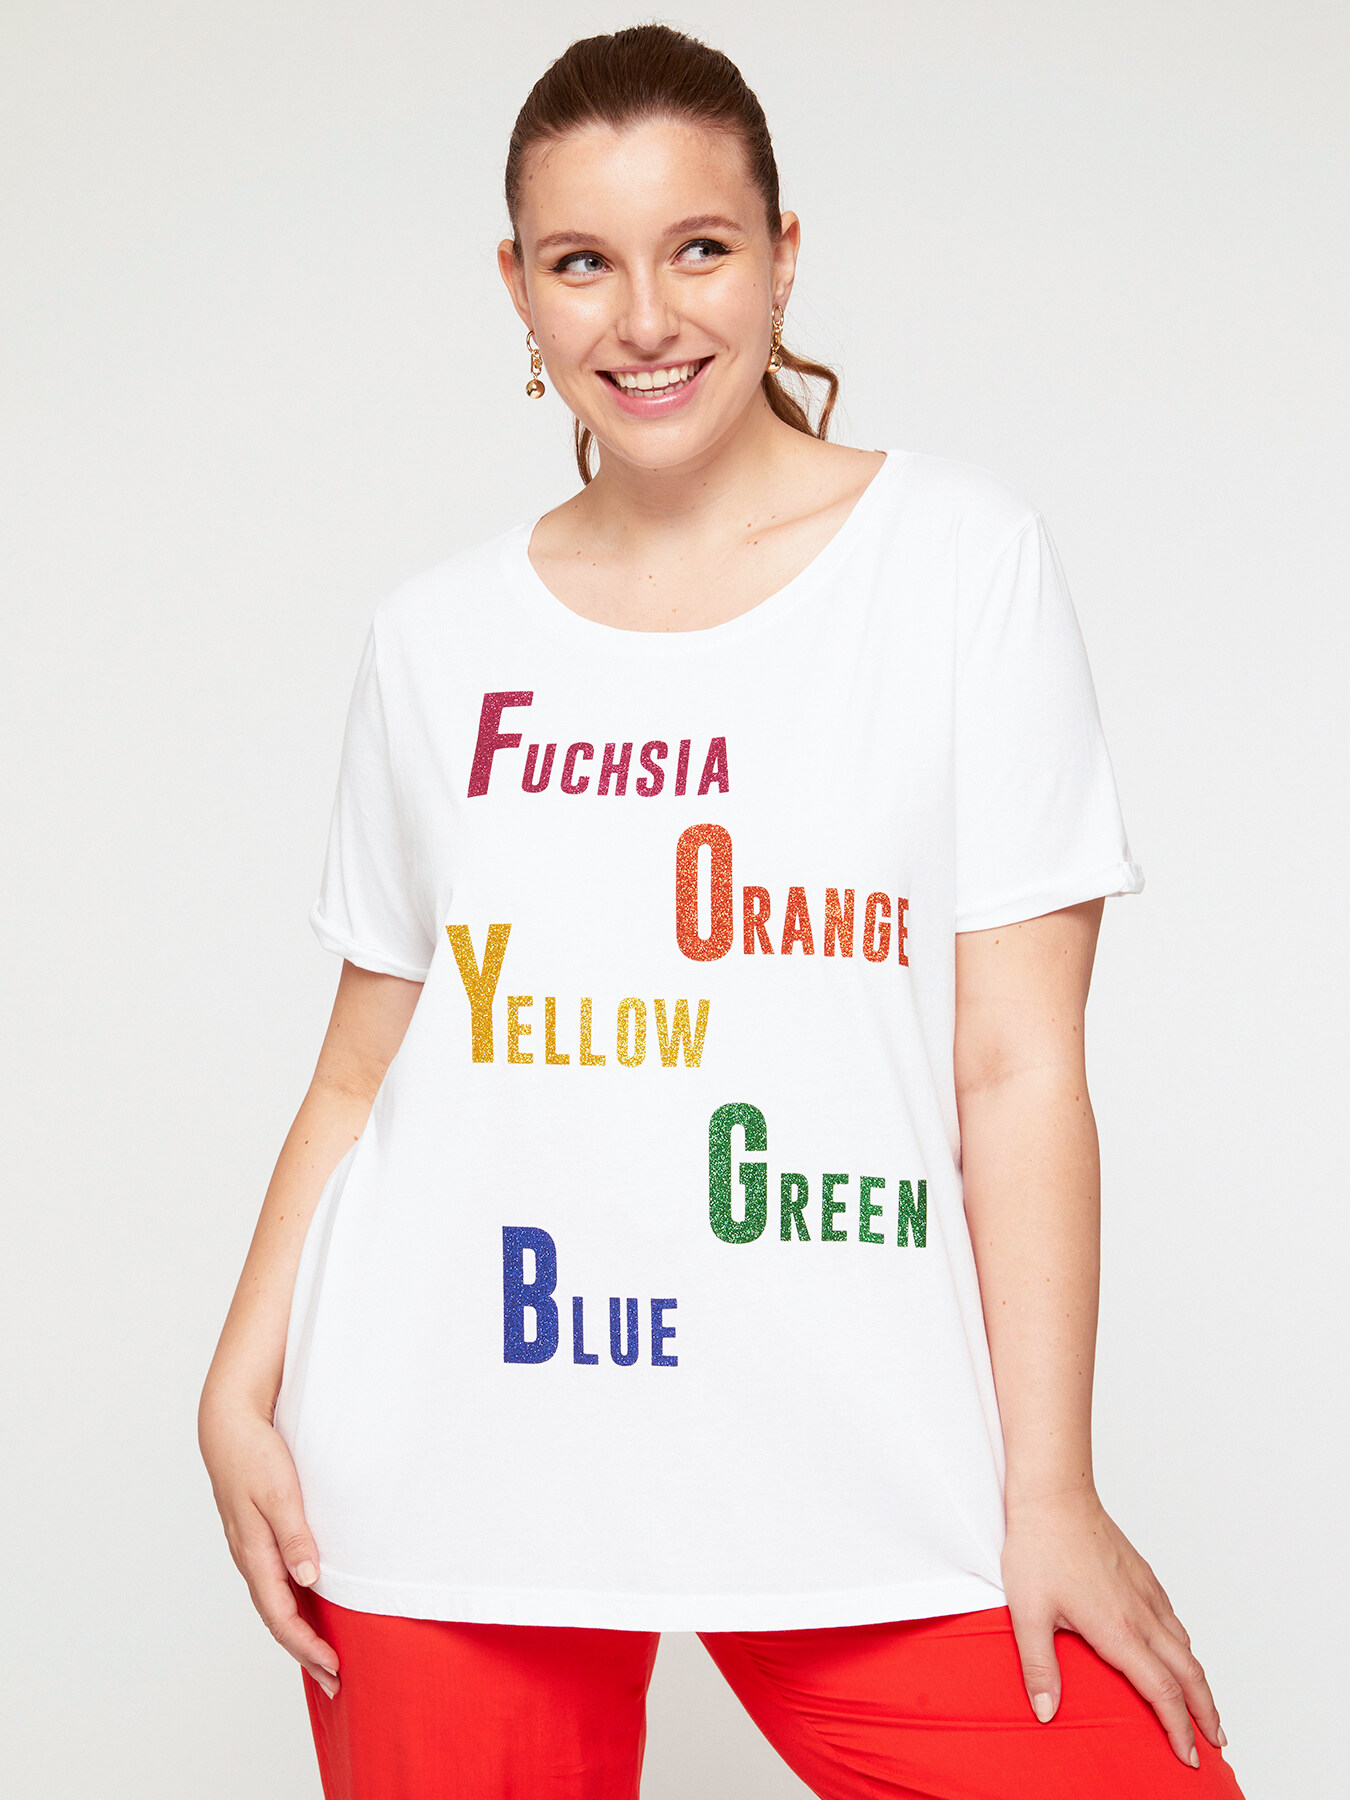 Camiseta con textos de colores image number 0